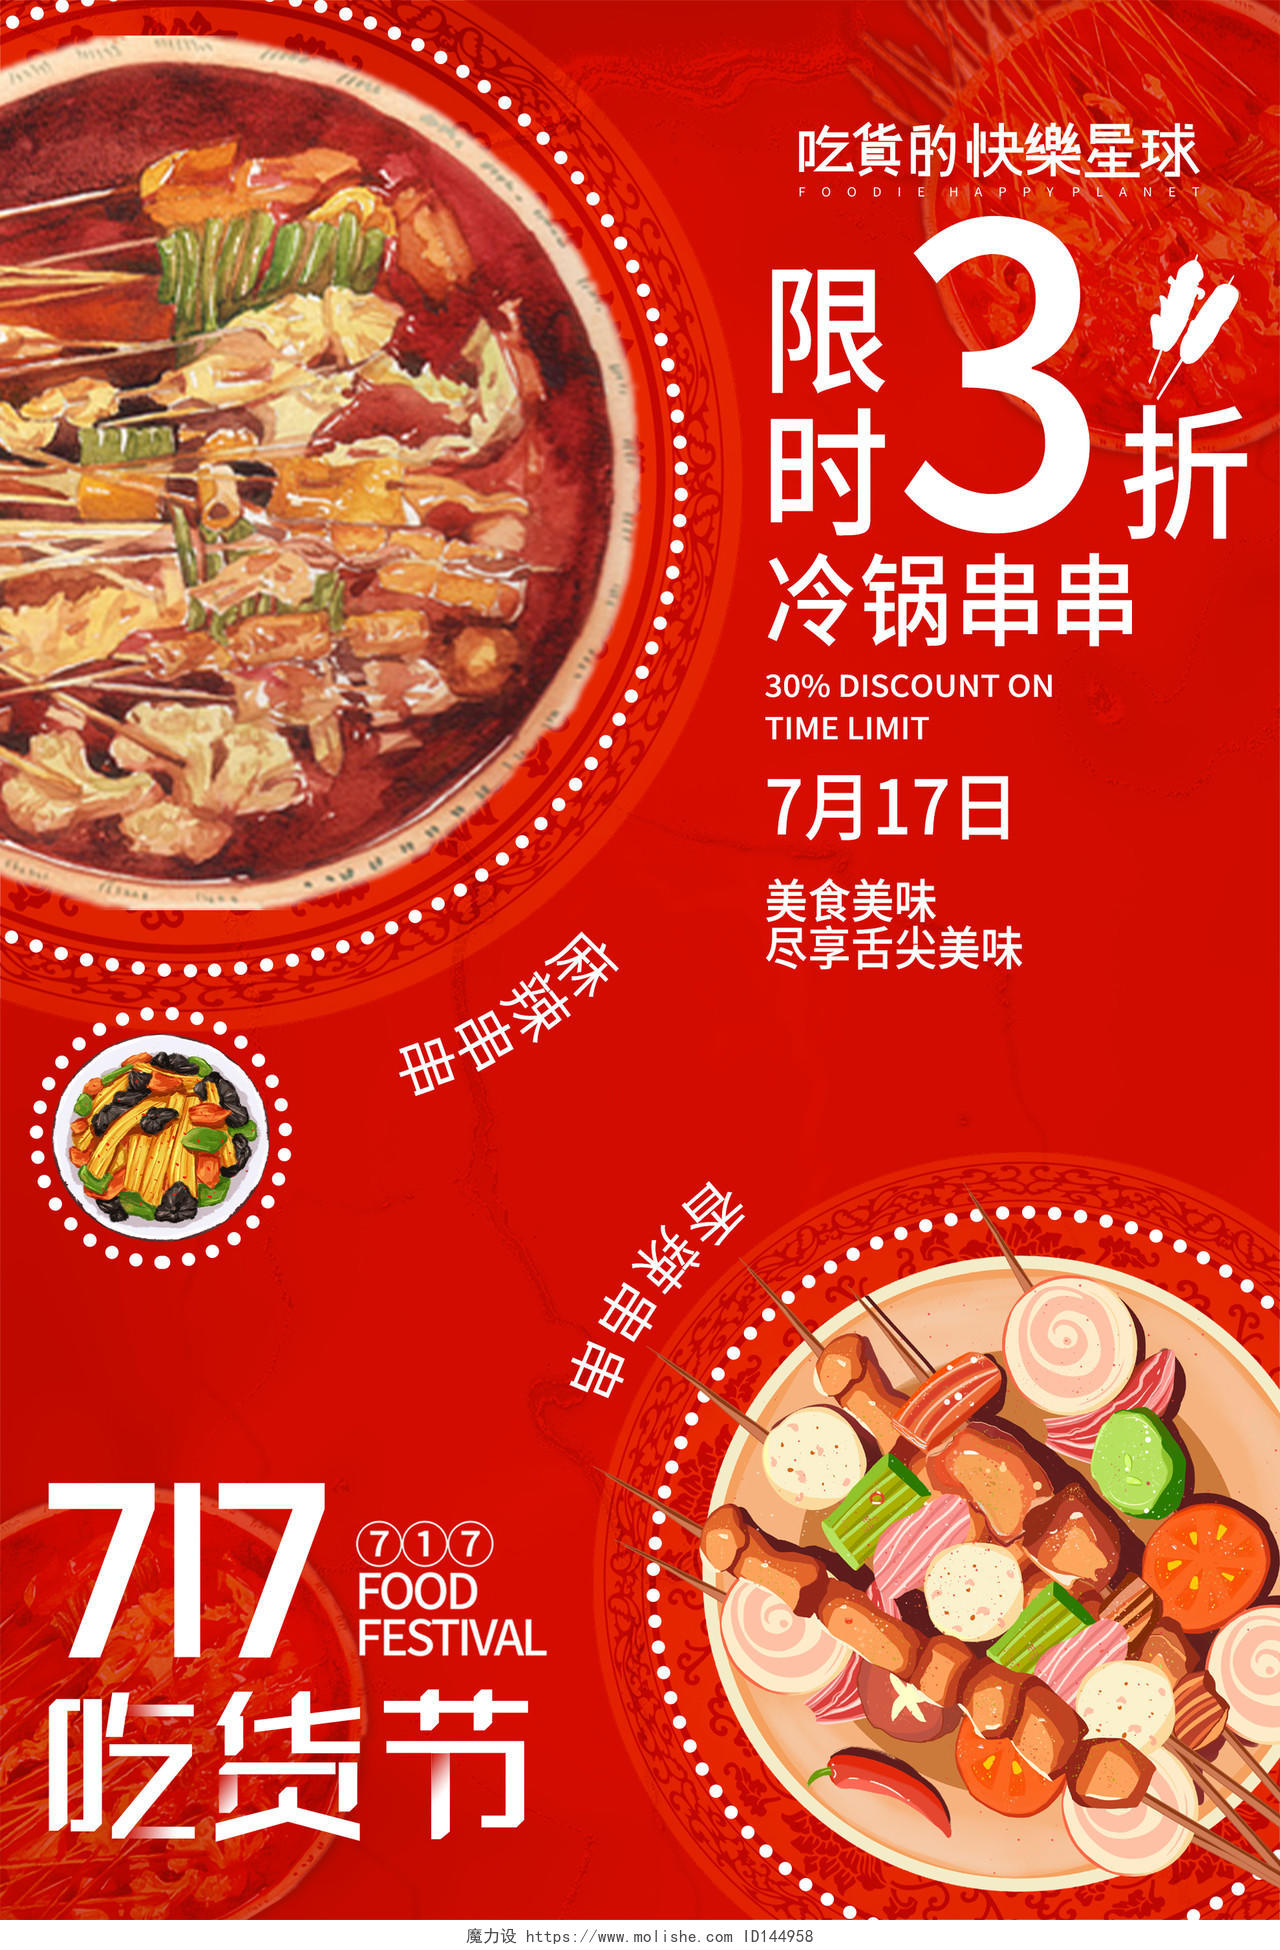 红色大气717吃货节冷锅串串美食促销活动海报